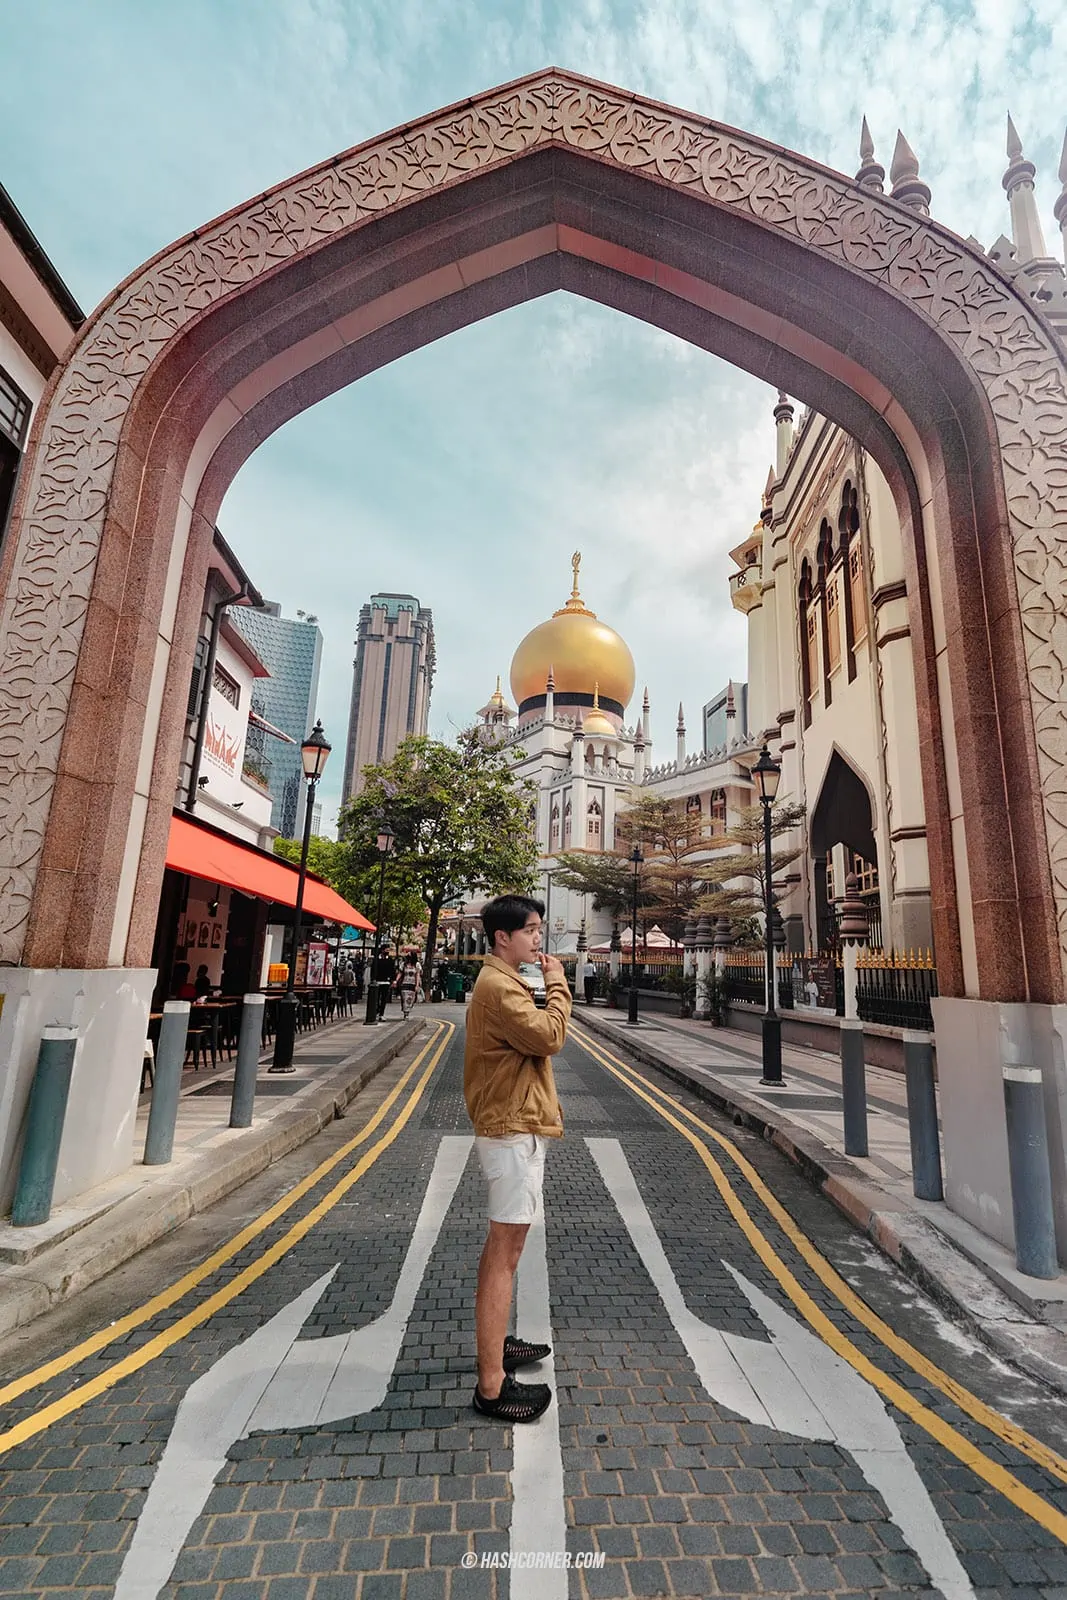 รีวิว มัสยิดสุลต่าน (Sultan Mosque) x สิงคโปร์ มุมถ่ายรูปสุดชิค 